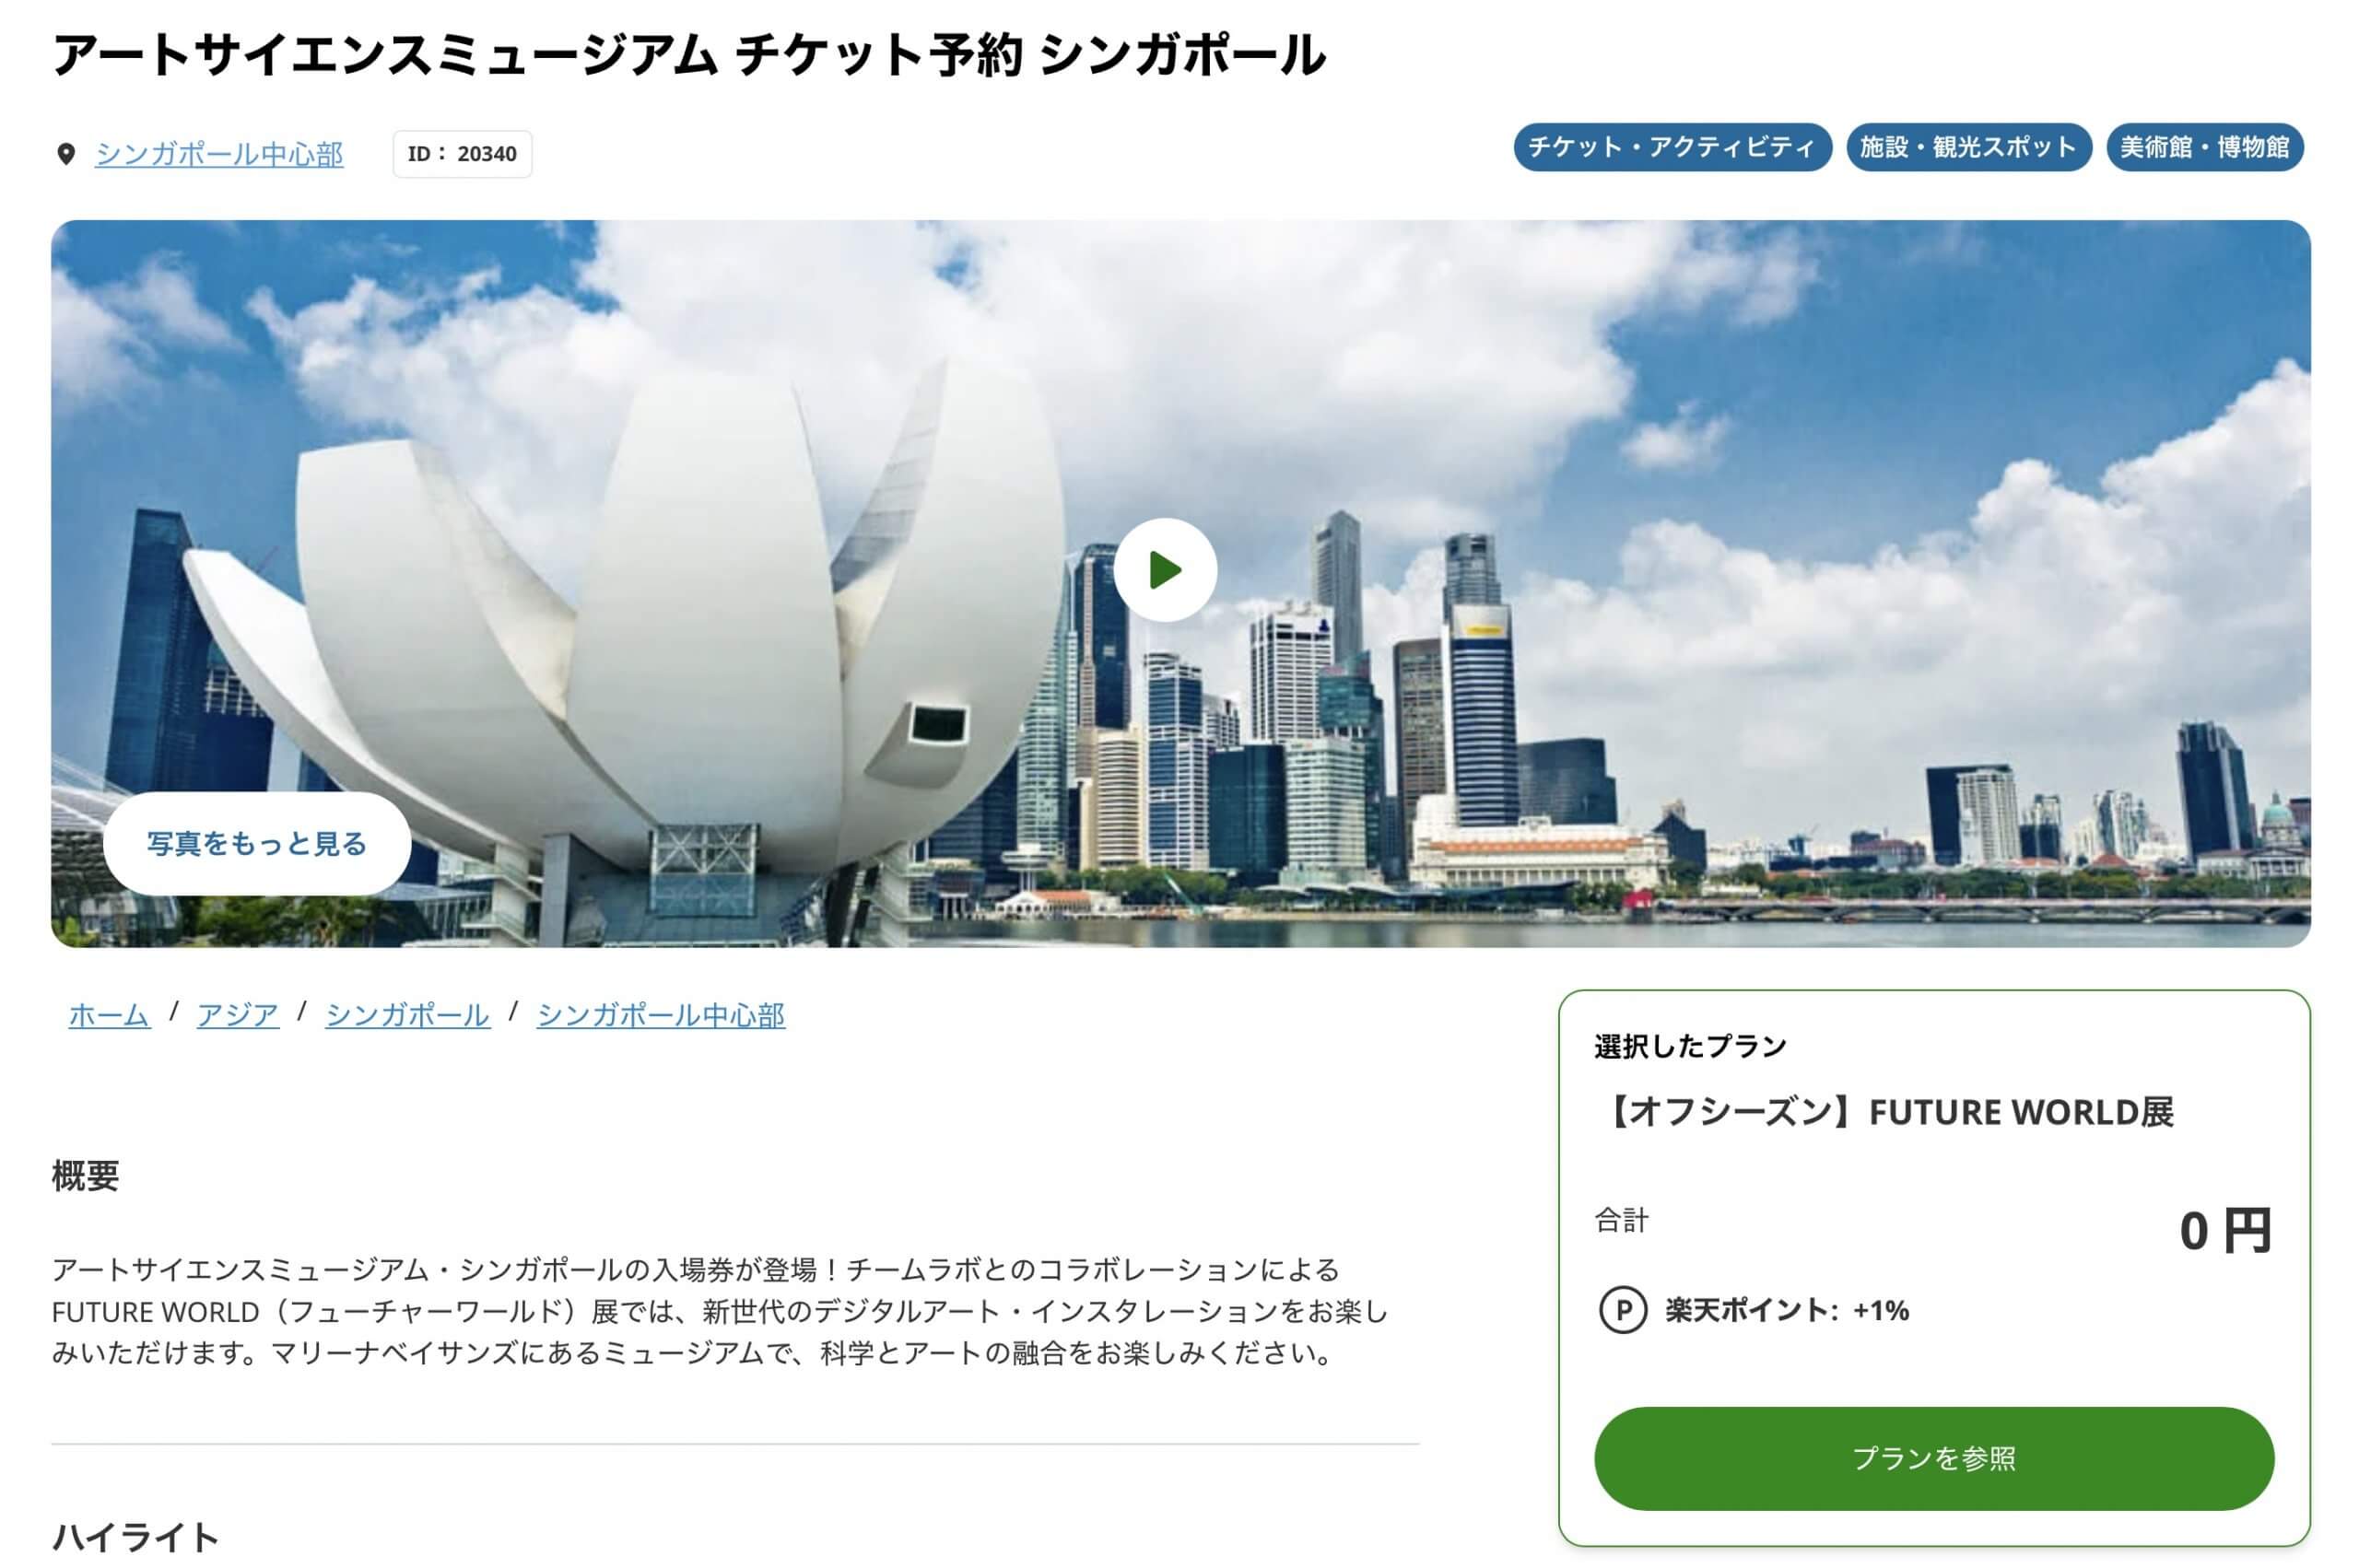 【割引チケット】シンガポール 「FUTURE WORLD」の予約方法・クーポン情報